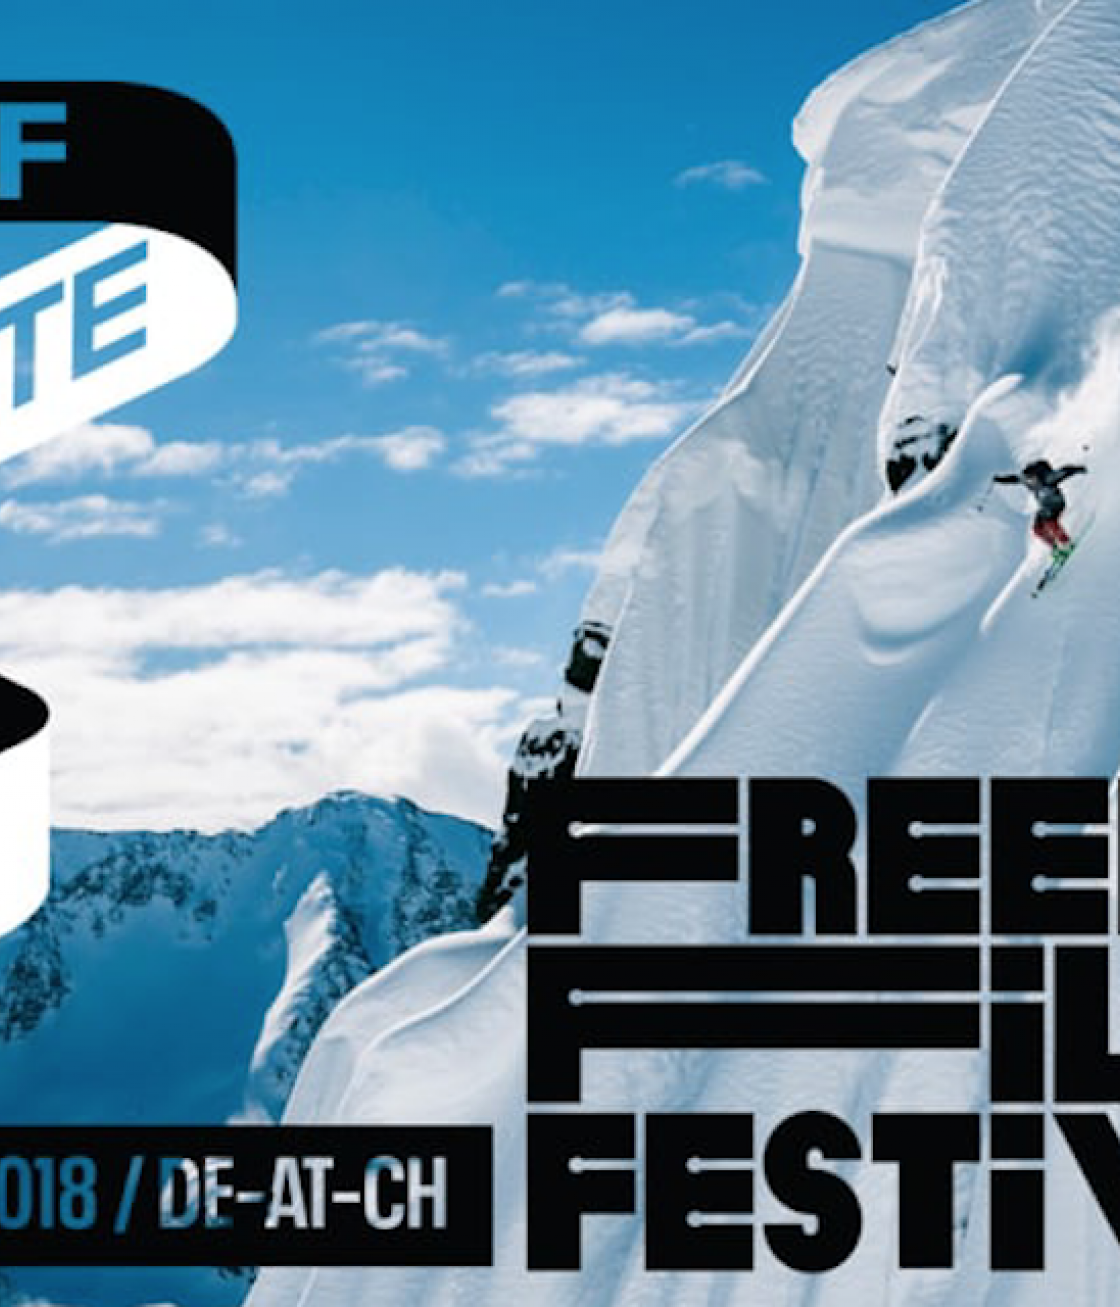 Freeride Filmfestival 2018 - 8. bis 20.11.2018 - Alle Filme, Infos zu Tickets und Termine im Überblick.